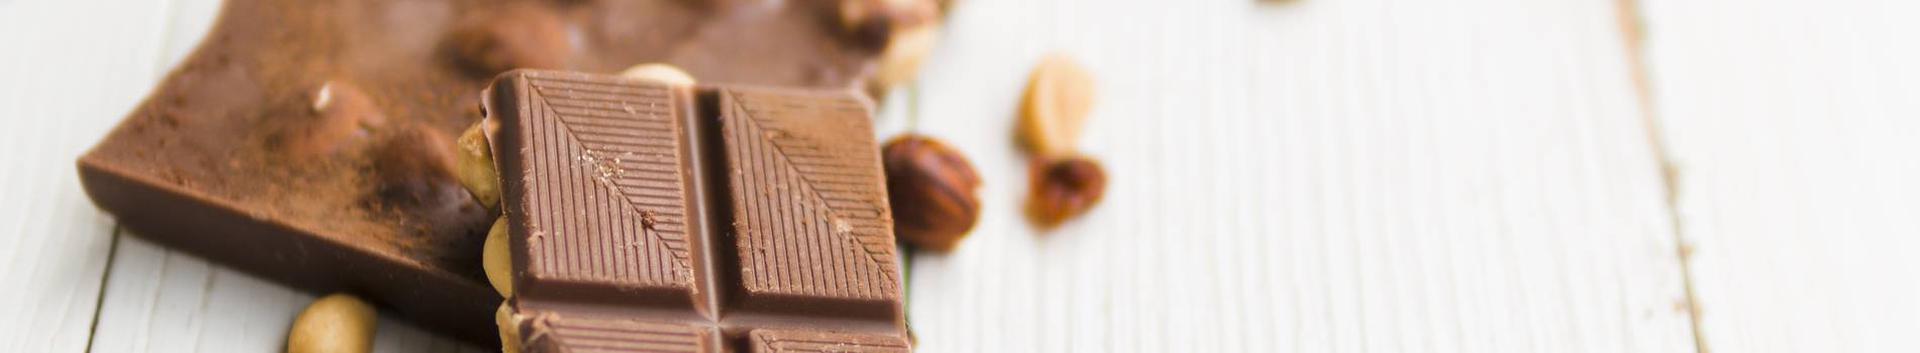 Rahvusvaheliselt tunnustatud luksuslik Eesti käsitöö šokolaad - assortii šokolaadi, šokolaaditahvleid ja šokolaadi trühvleid - ainulaadseid kingitused..